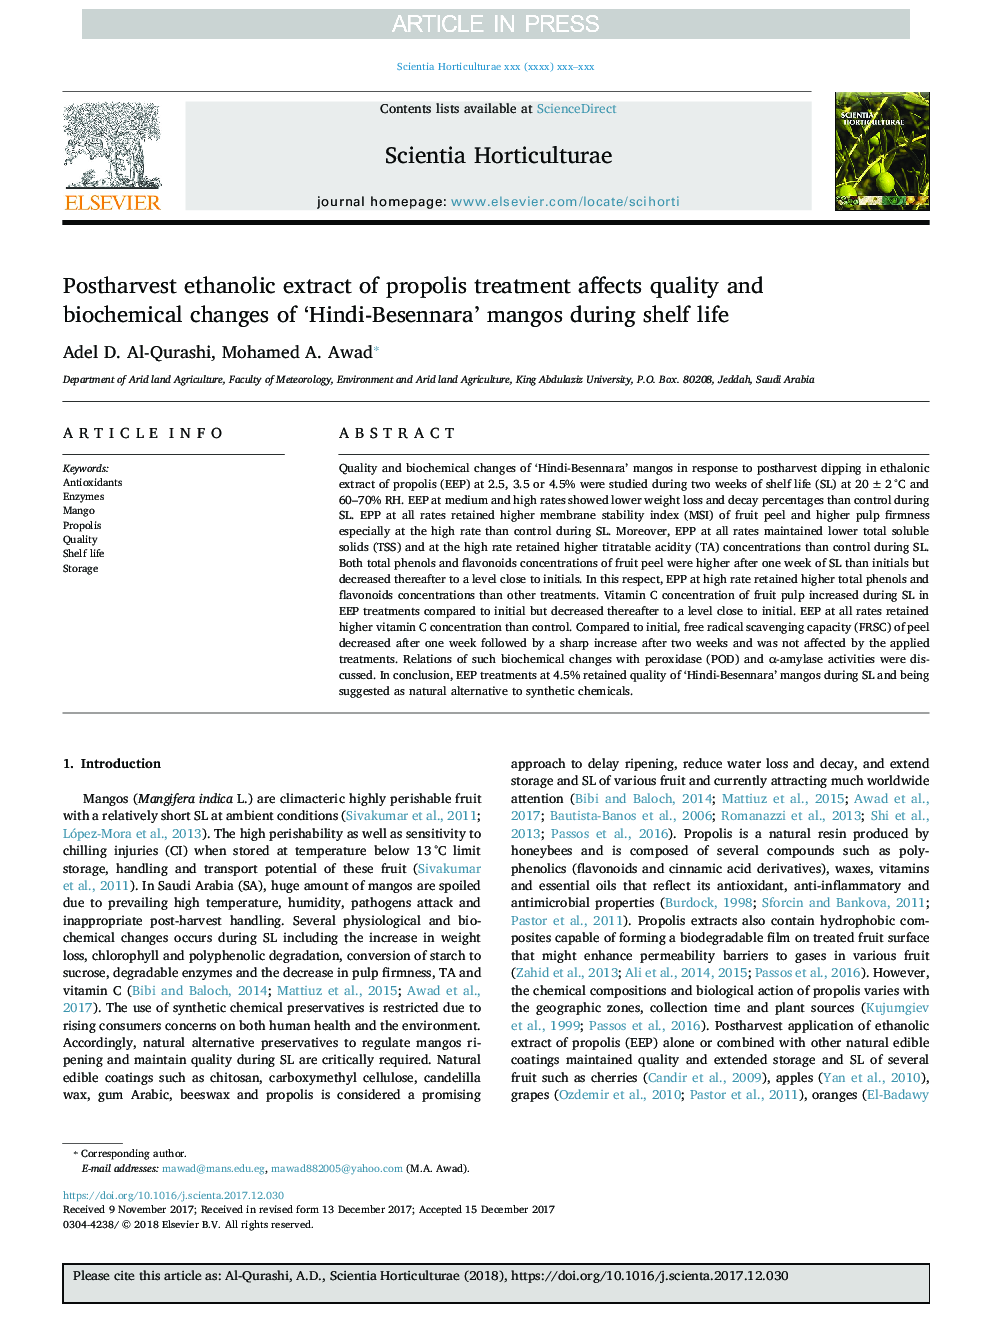 عصاره اتانولی پس از برداشت از درمان پروپولول بر تغییرات کیفیت و بیوشیمیایی مانگو هندی بسنراتا در طول عمر مفید تاثیر می 